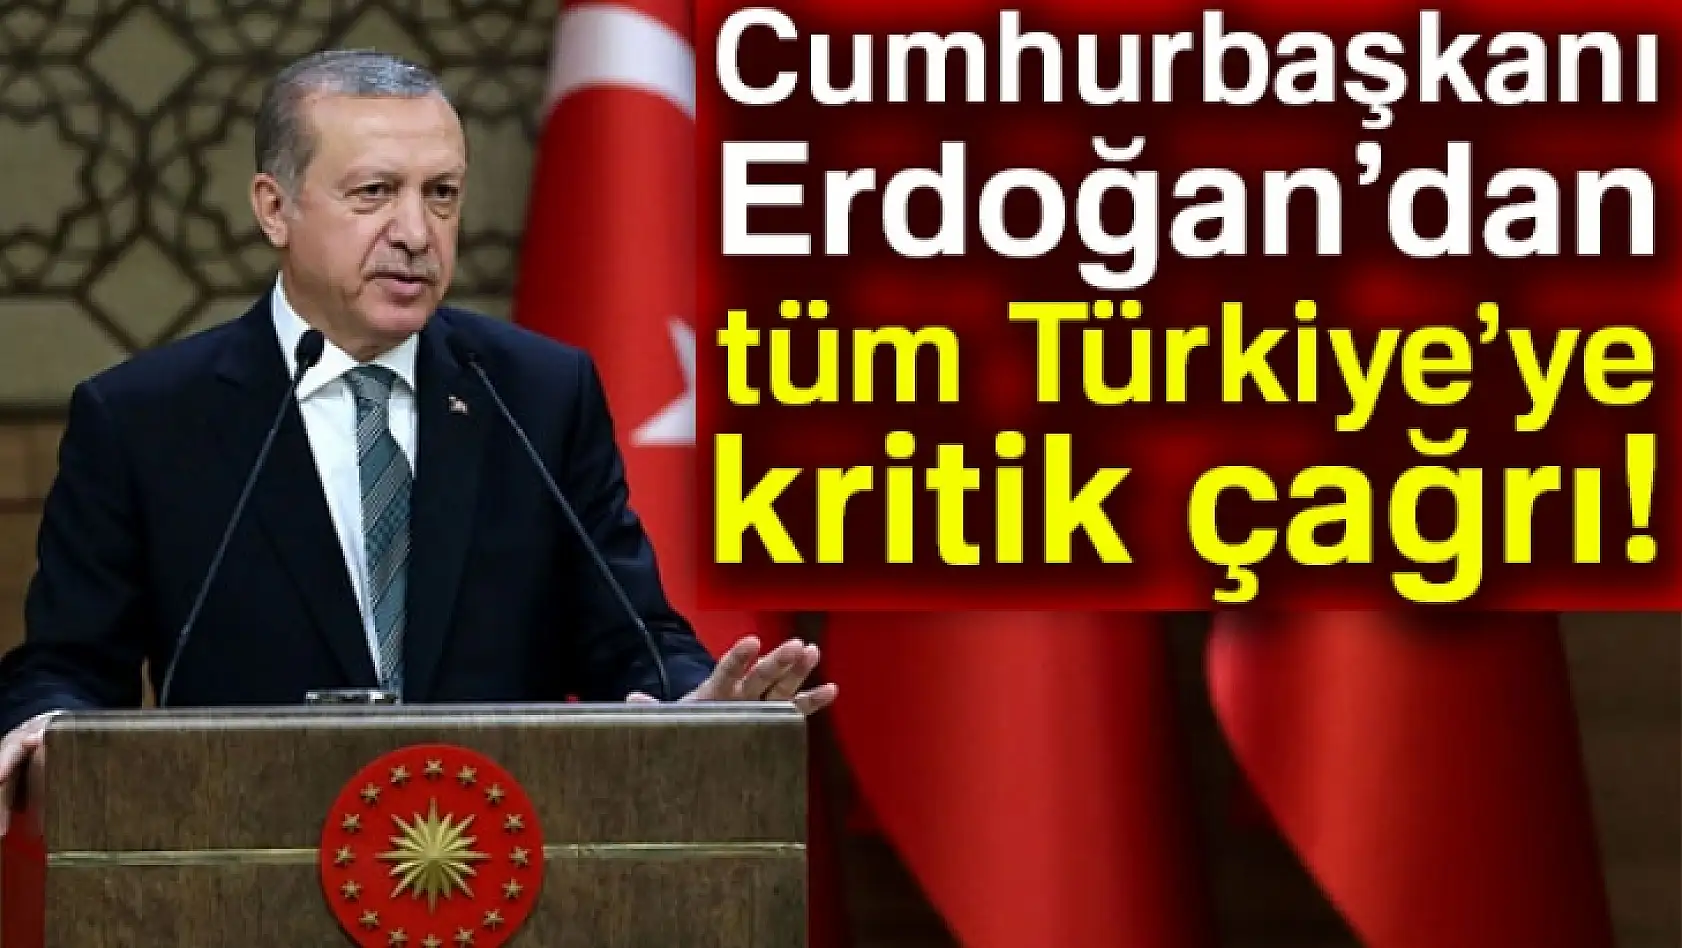 Cumhurbaşkanı Erdoğan'dan Tüm Türkiye'ye Kritik Çağrı